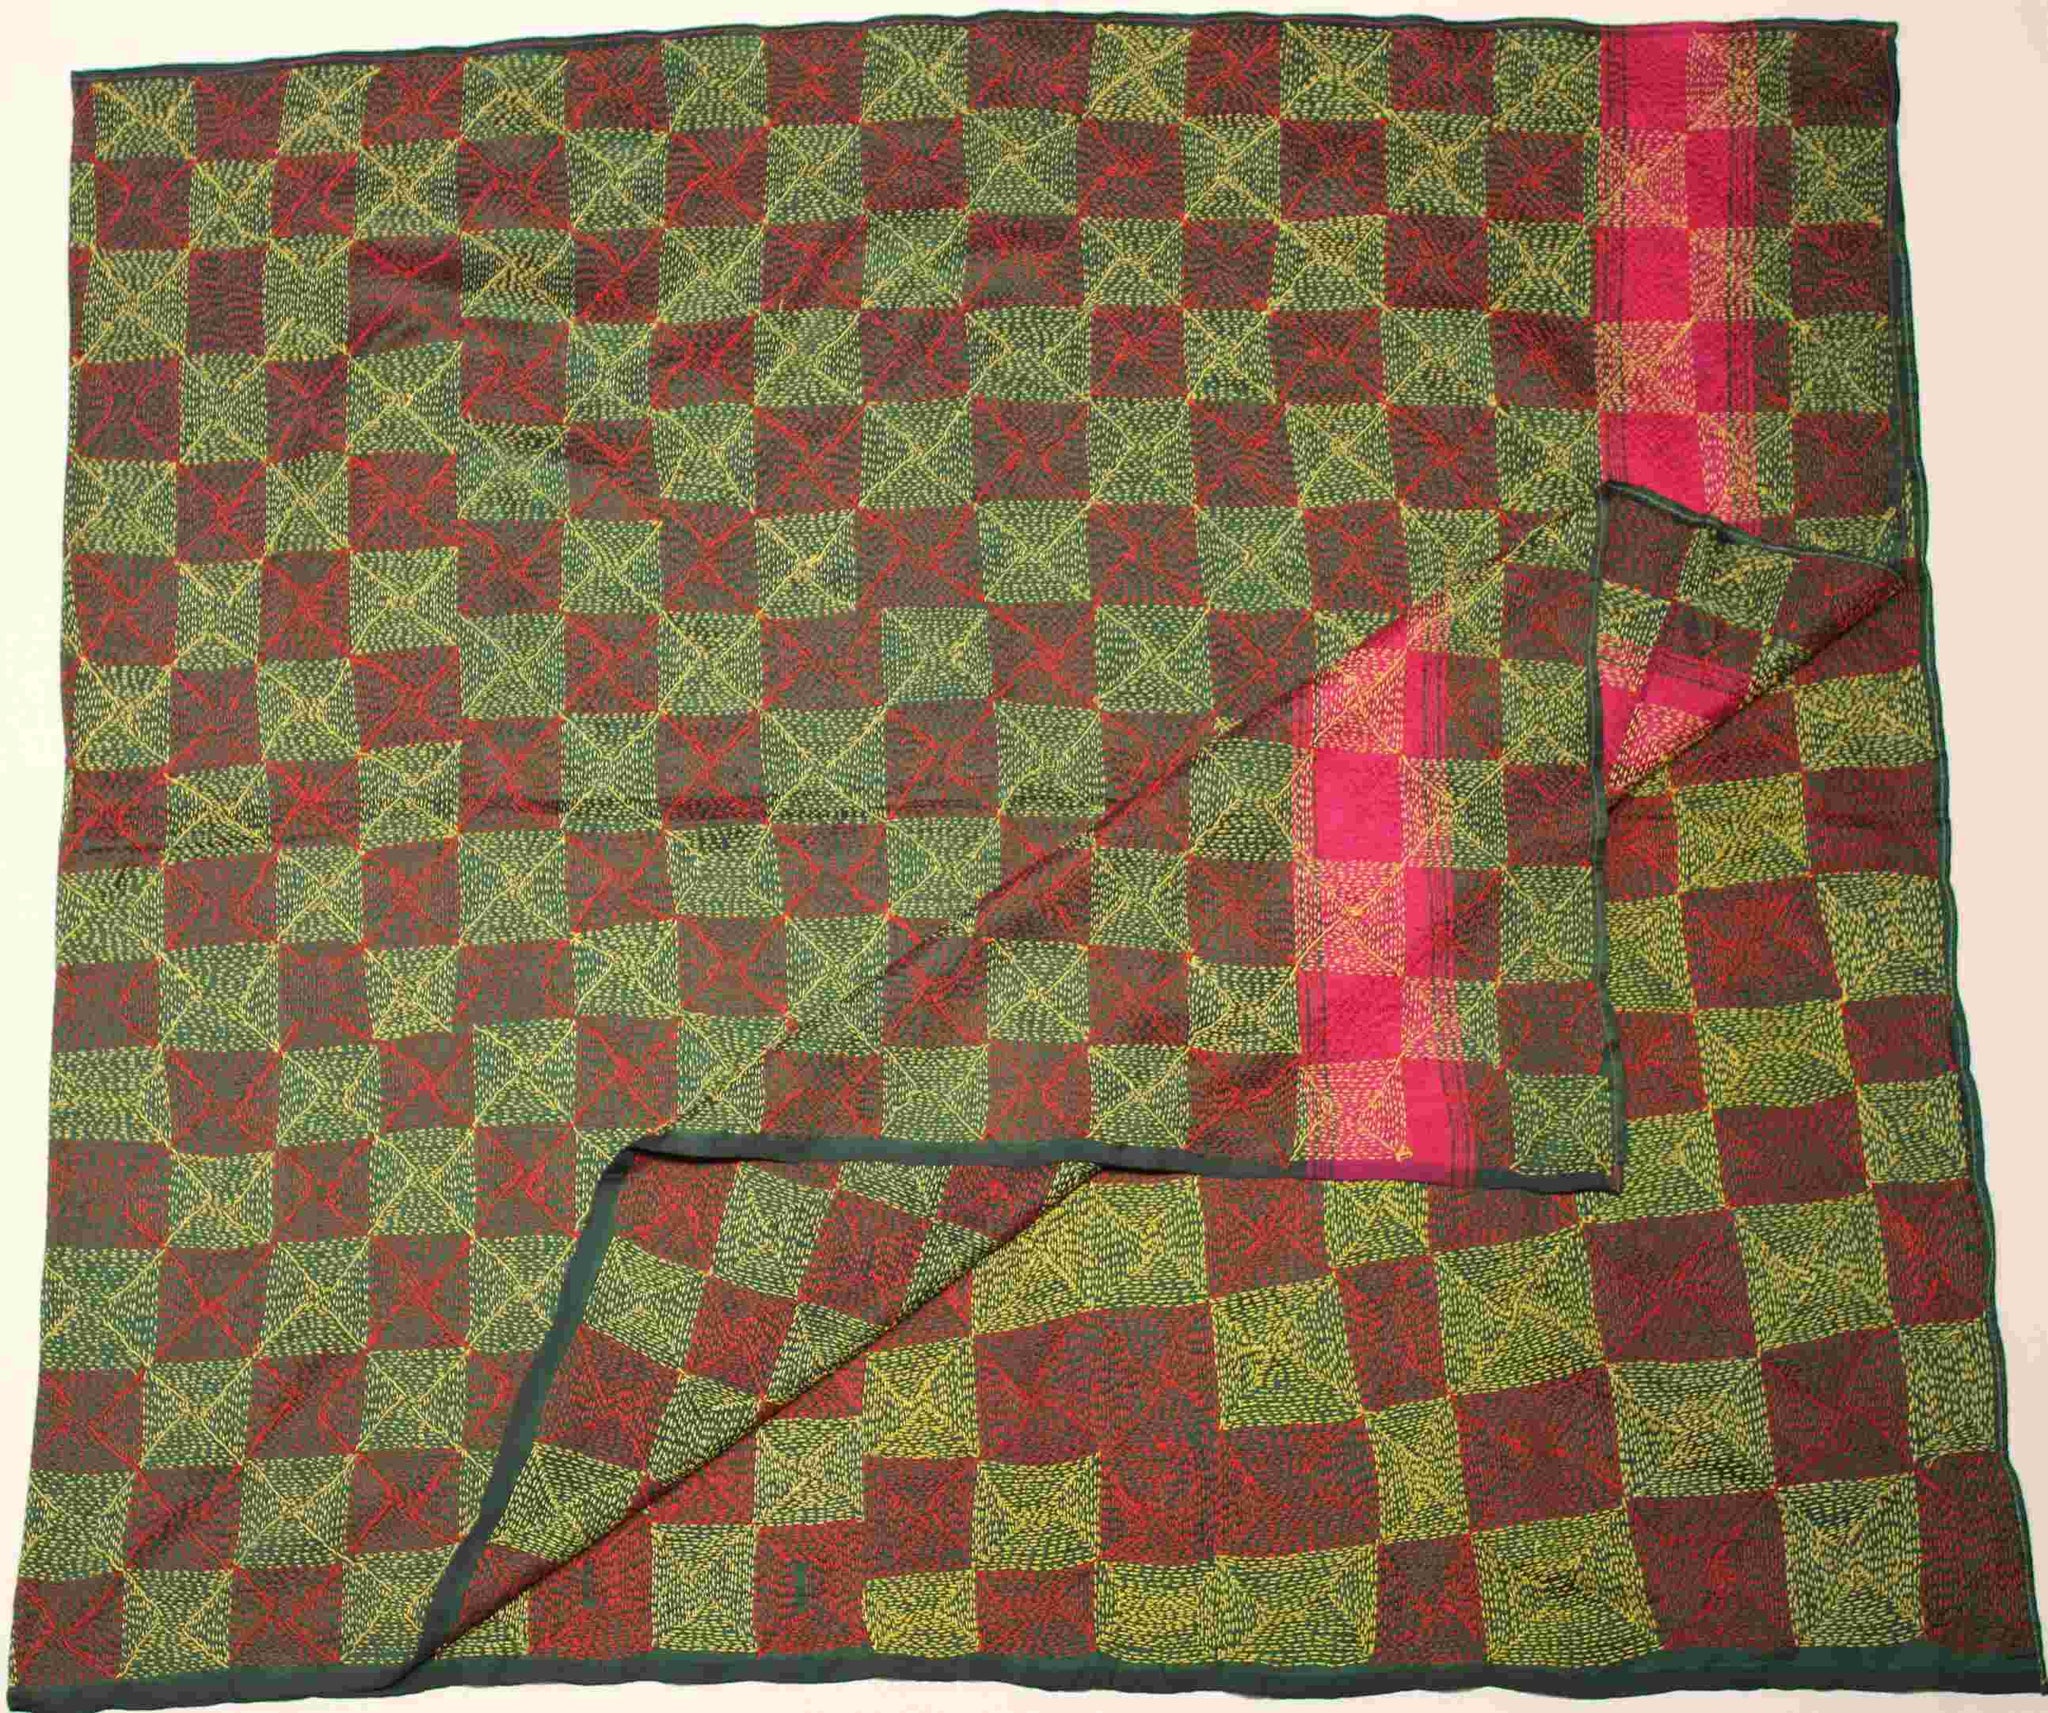 Hand-stitched Silk Throw